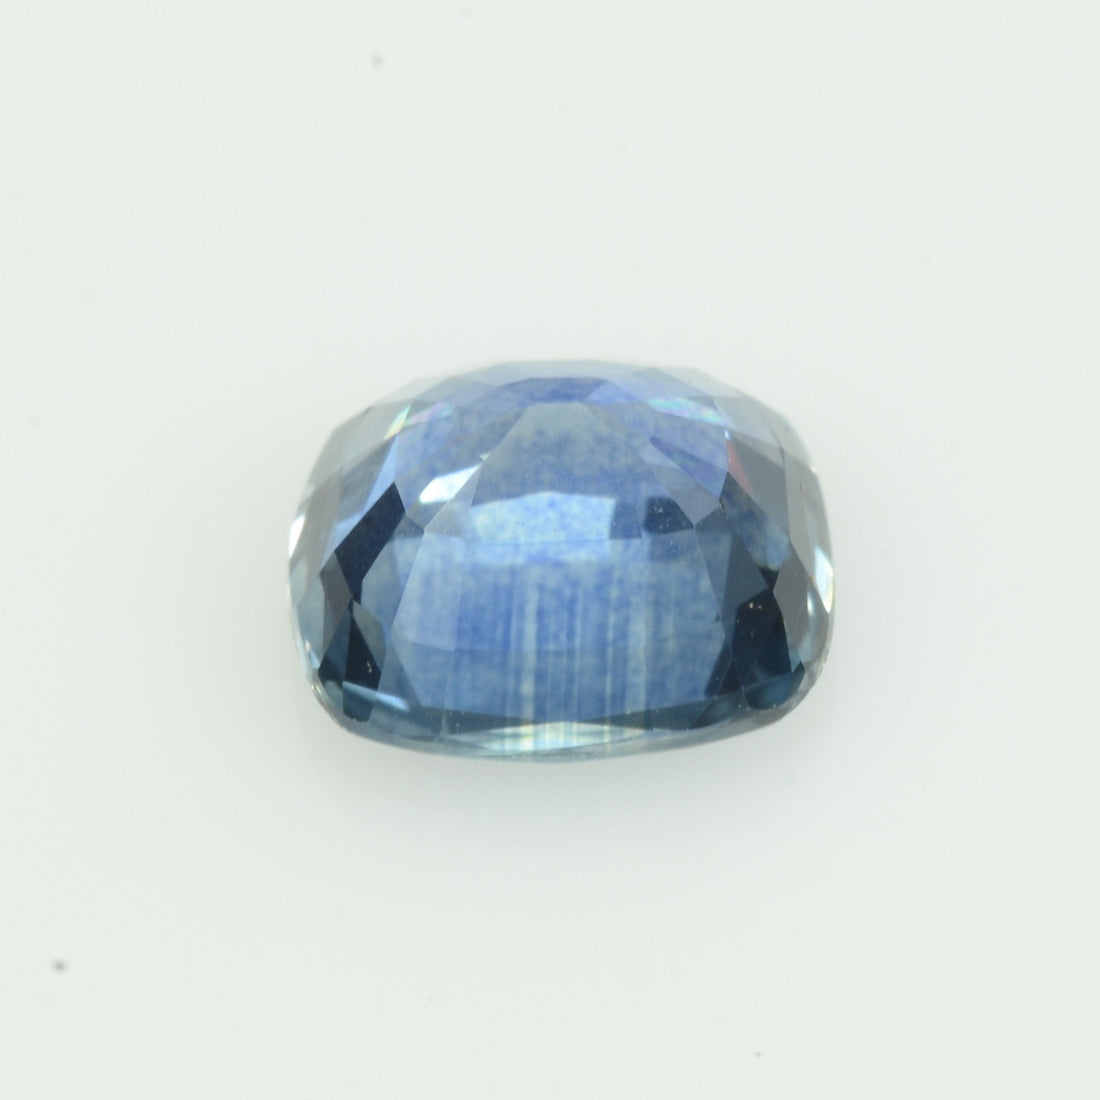 1.18 cts Natural Blue Sapphire Loose Gemstone Cushion Cut